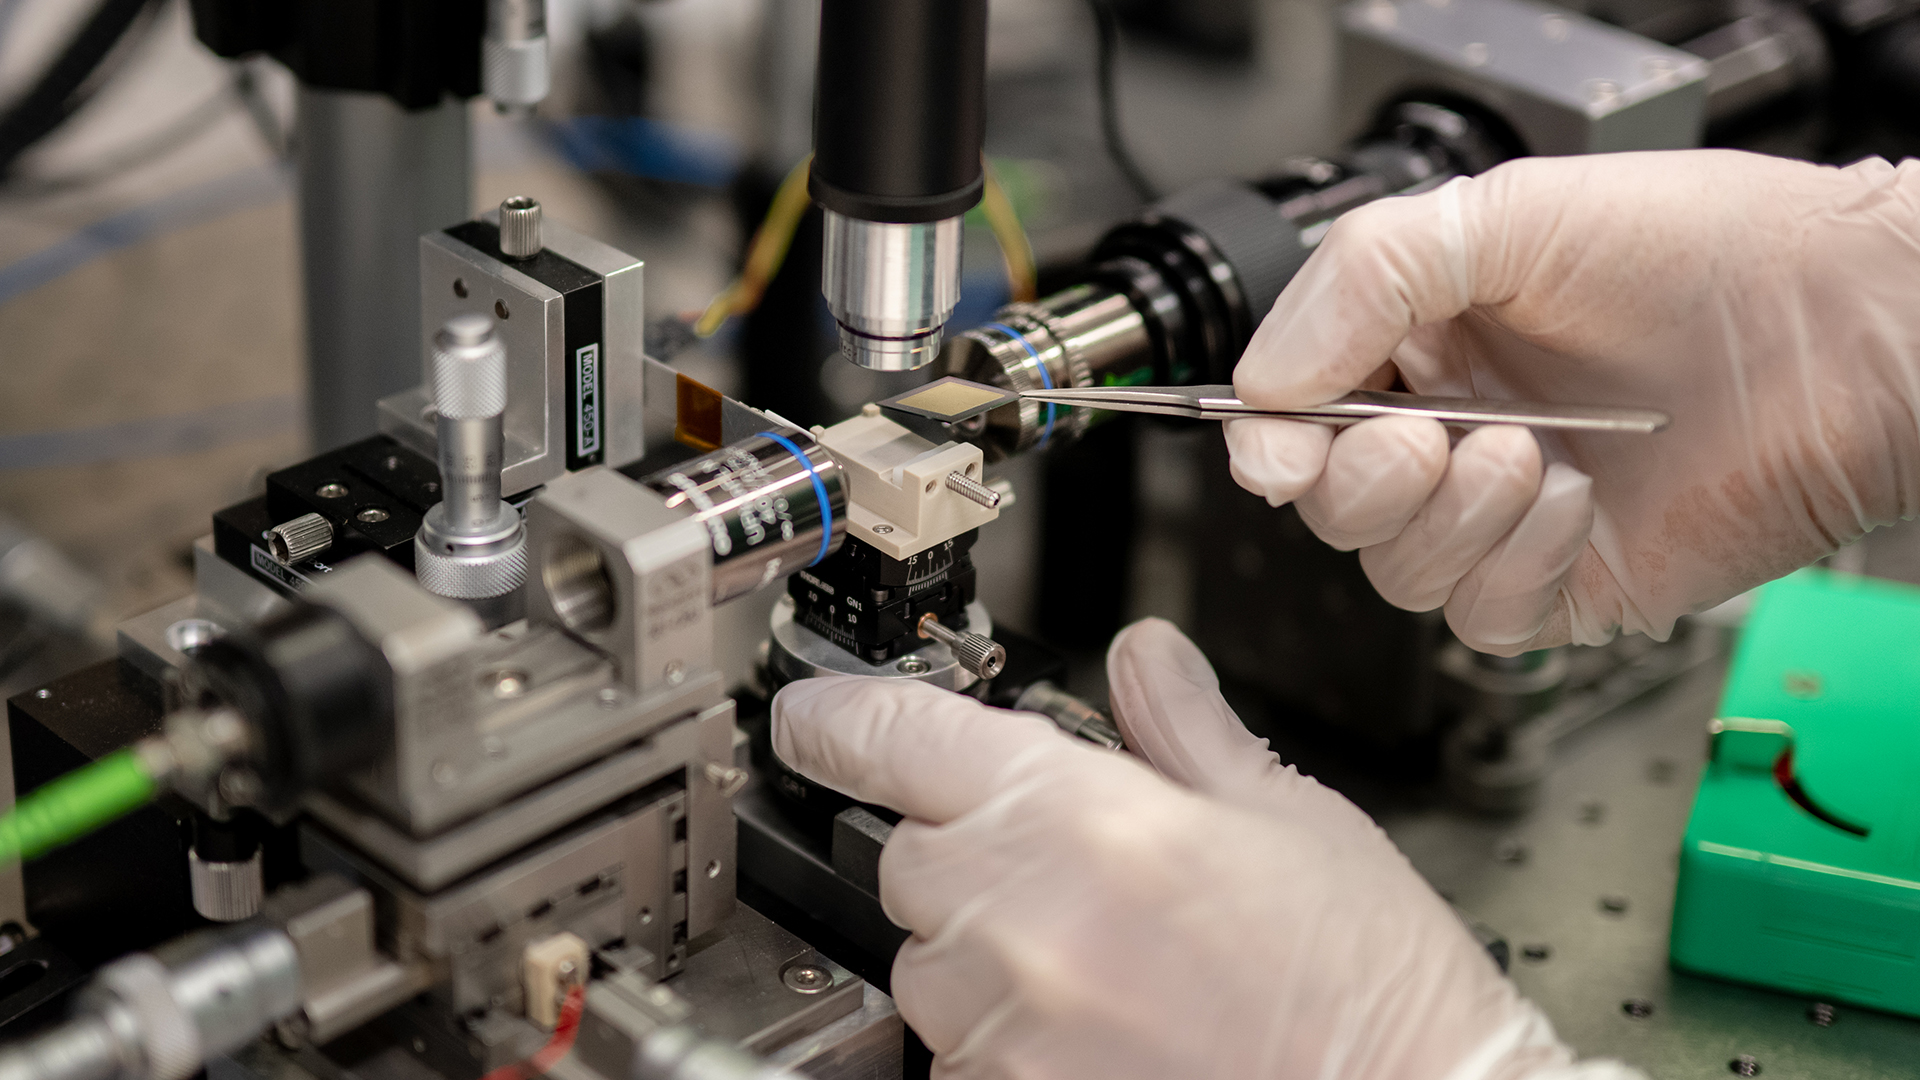 SRI is developing breakthrough quantum technologies for ultrasensitive sensing